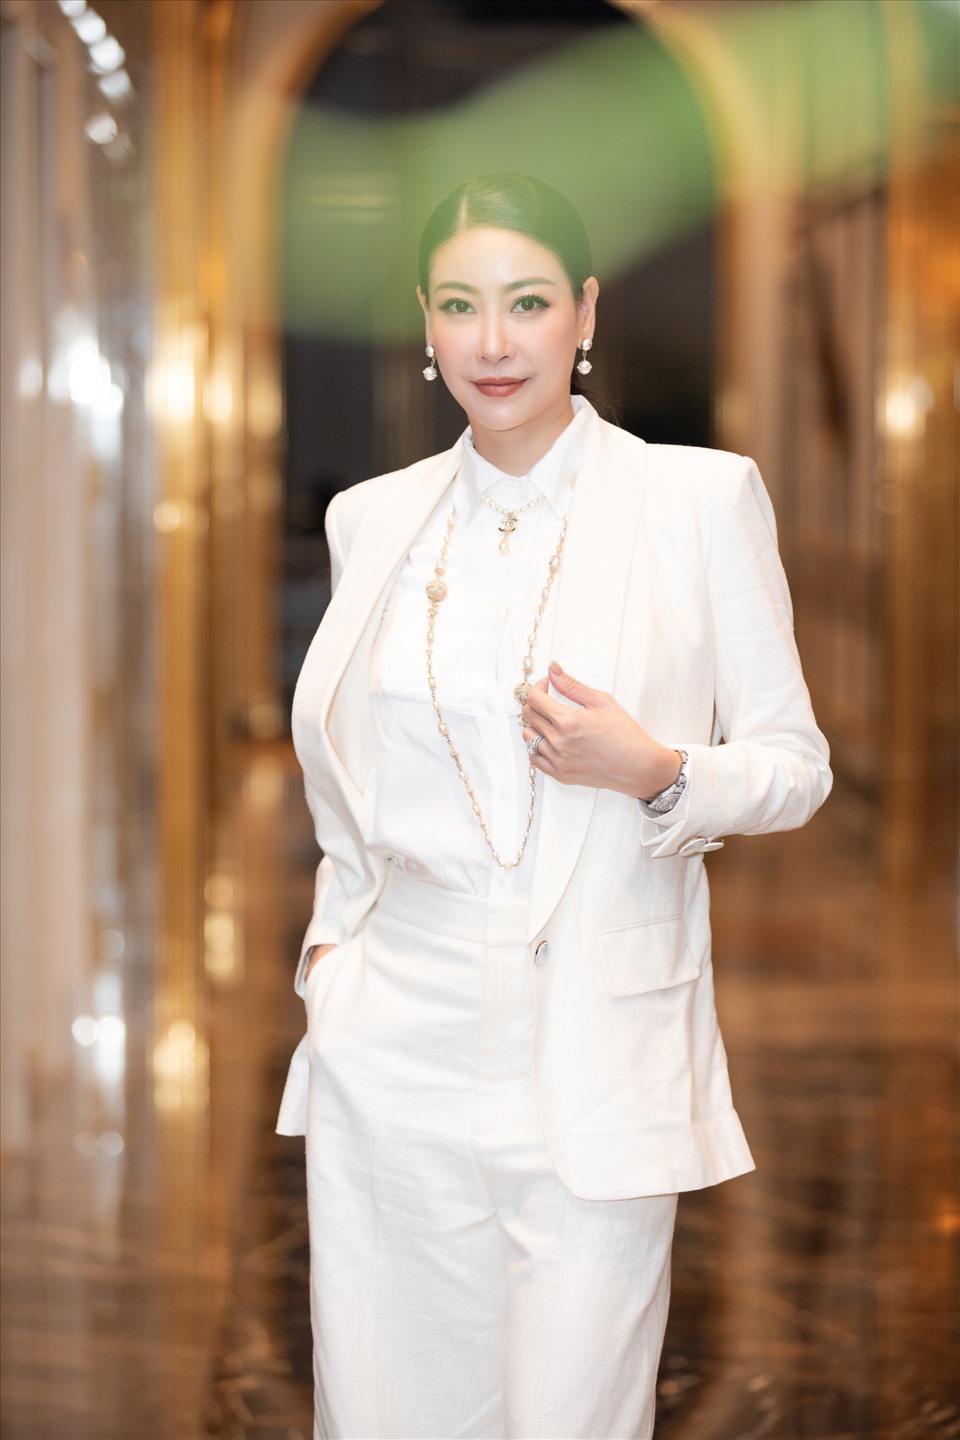 Thành viên Ban giám khảo - Hoa hậu Hà Kiều Anh xinh đẹp trong sắc trắng. Ảnh: HHVN.